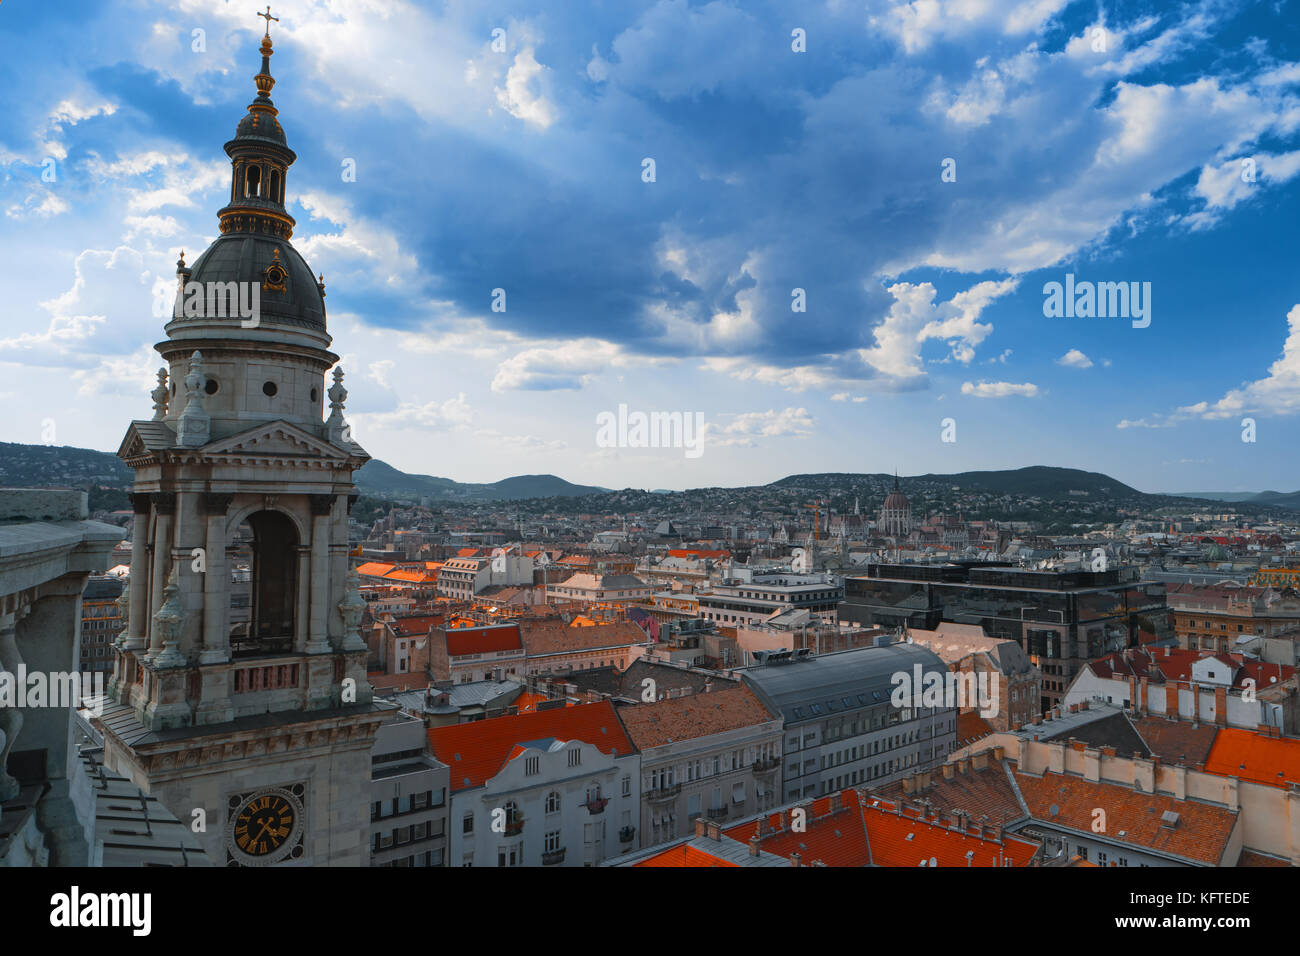 El horizonte de la ciudad de Budapest, Hungría, Europa. vista superior del centro de la ciudad con el Parlamento hungalian en fondo. Bell de saint stephens panorama de la basílica. Foto de stock